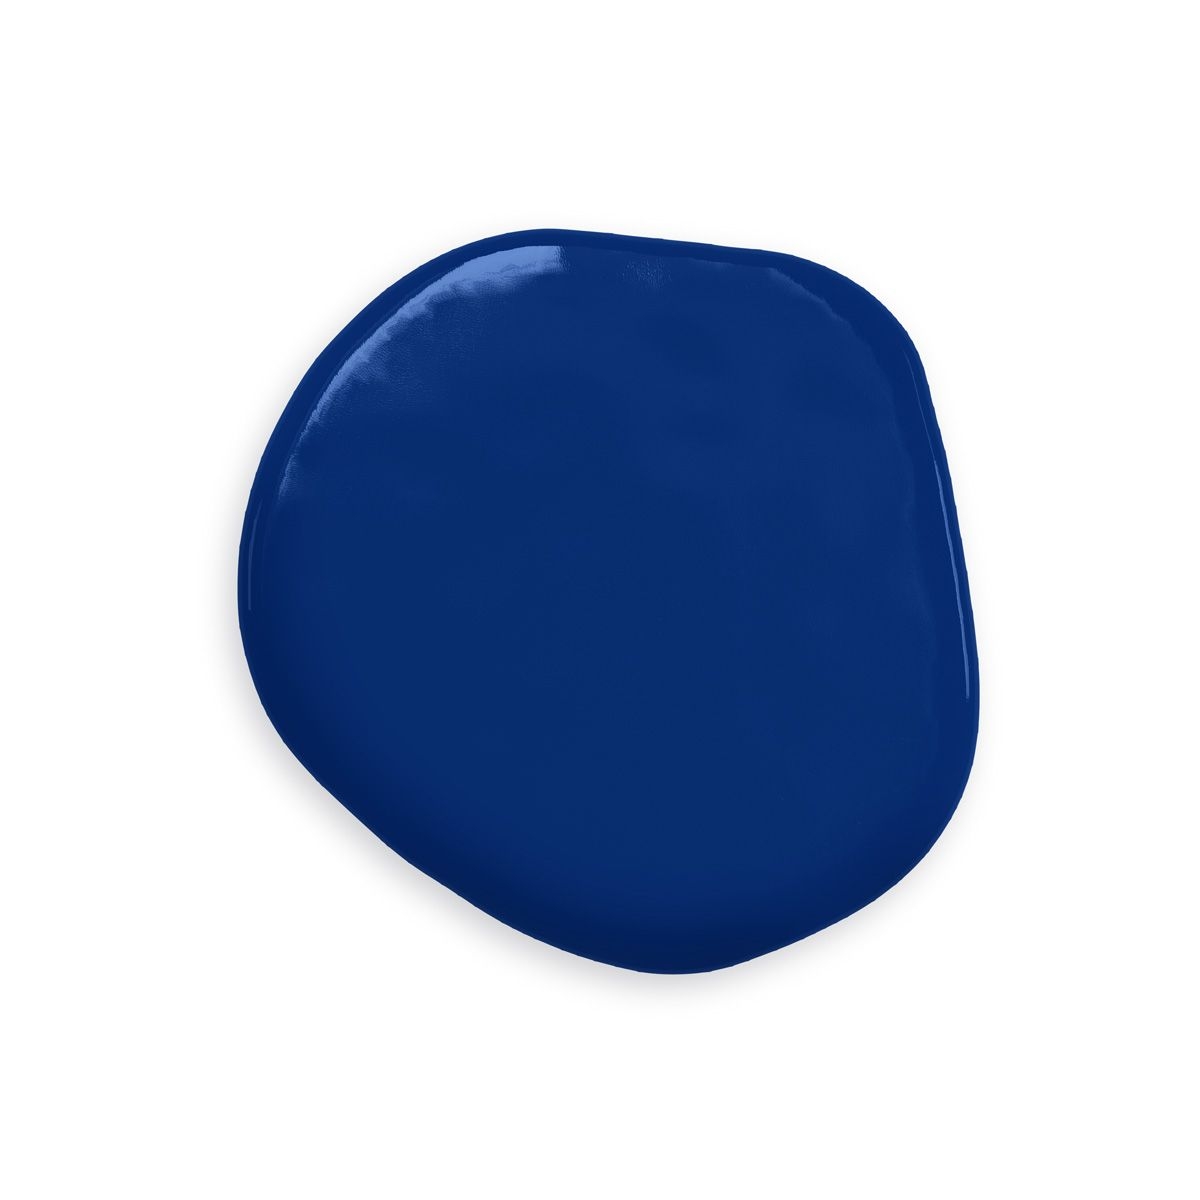 Colorant alimentaire à base d'huile Cobalt Blue Color Mill colorant  alimentaire bleu vif avec une force de coloration supérieure pour une large  gamme de couleurs. -  France